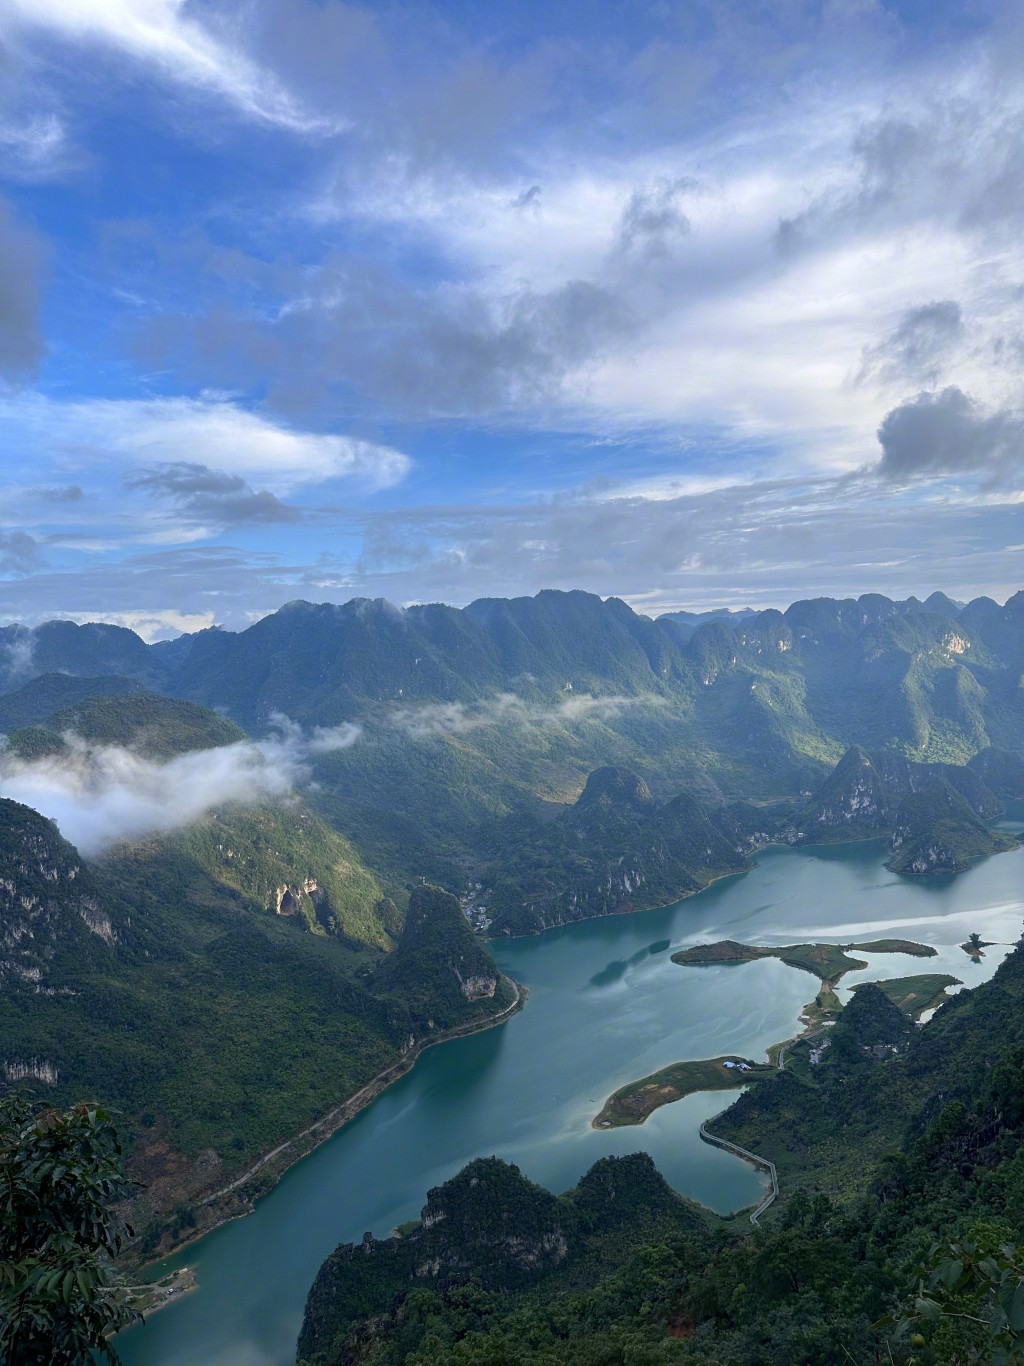 张馨予在广西浩坤湖行山打卡。微博